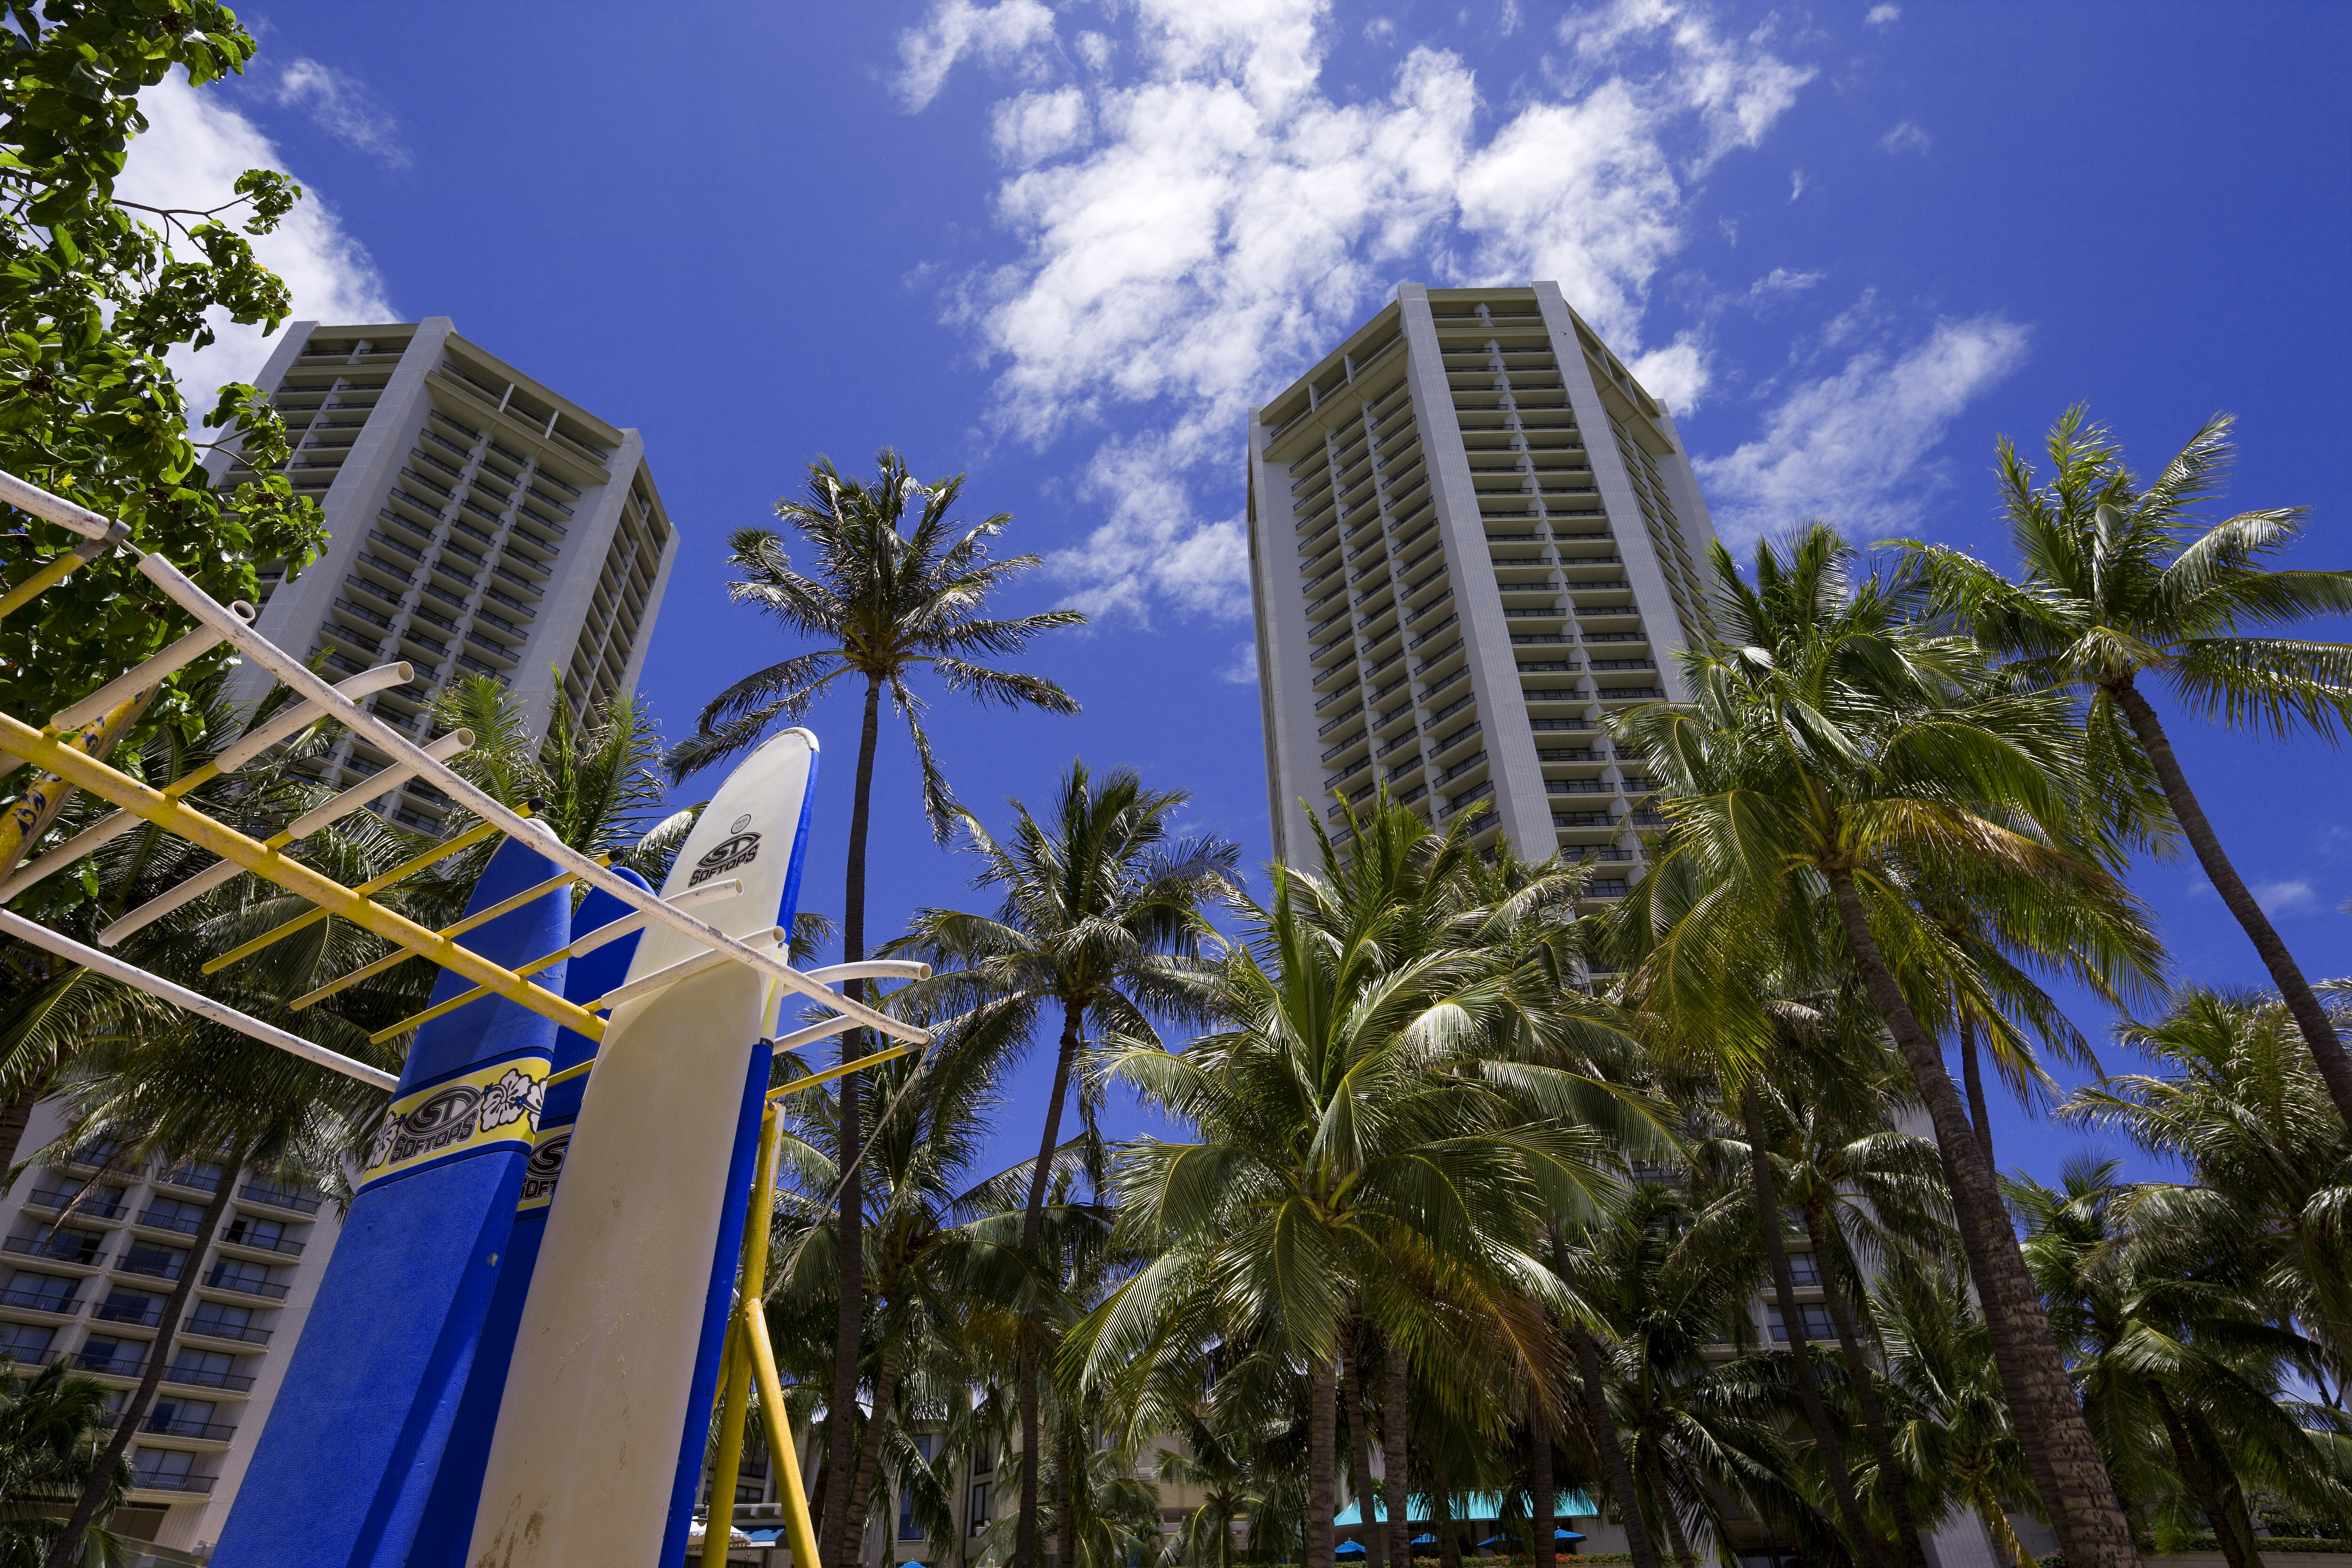 Foto, materiell, befreit, Landschaft, Bild, hat Foto auf Lager,Waikiki-Hotel, Strand, Surfboard, blauer Himmel, Gebude